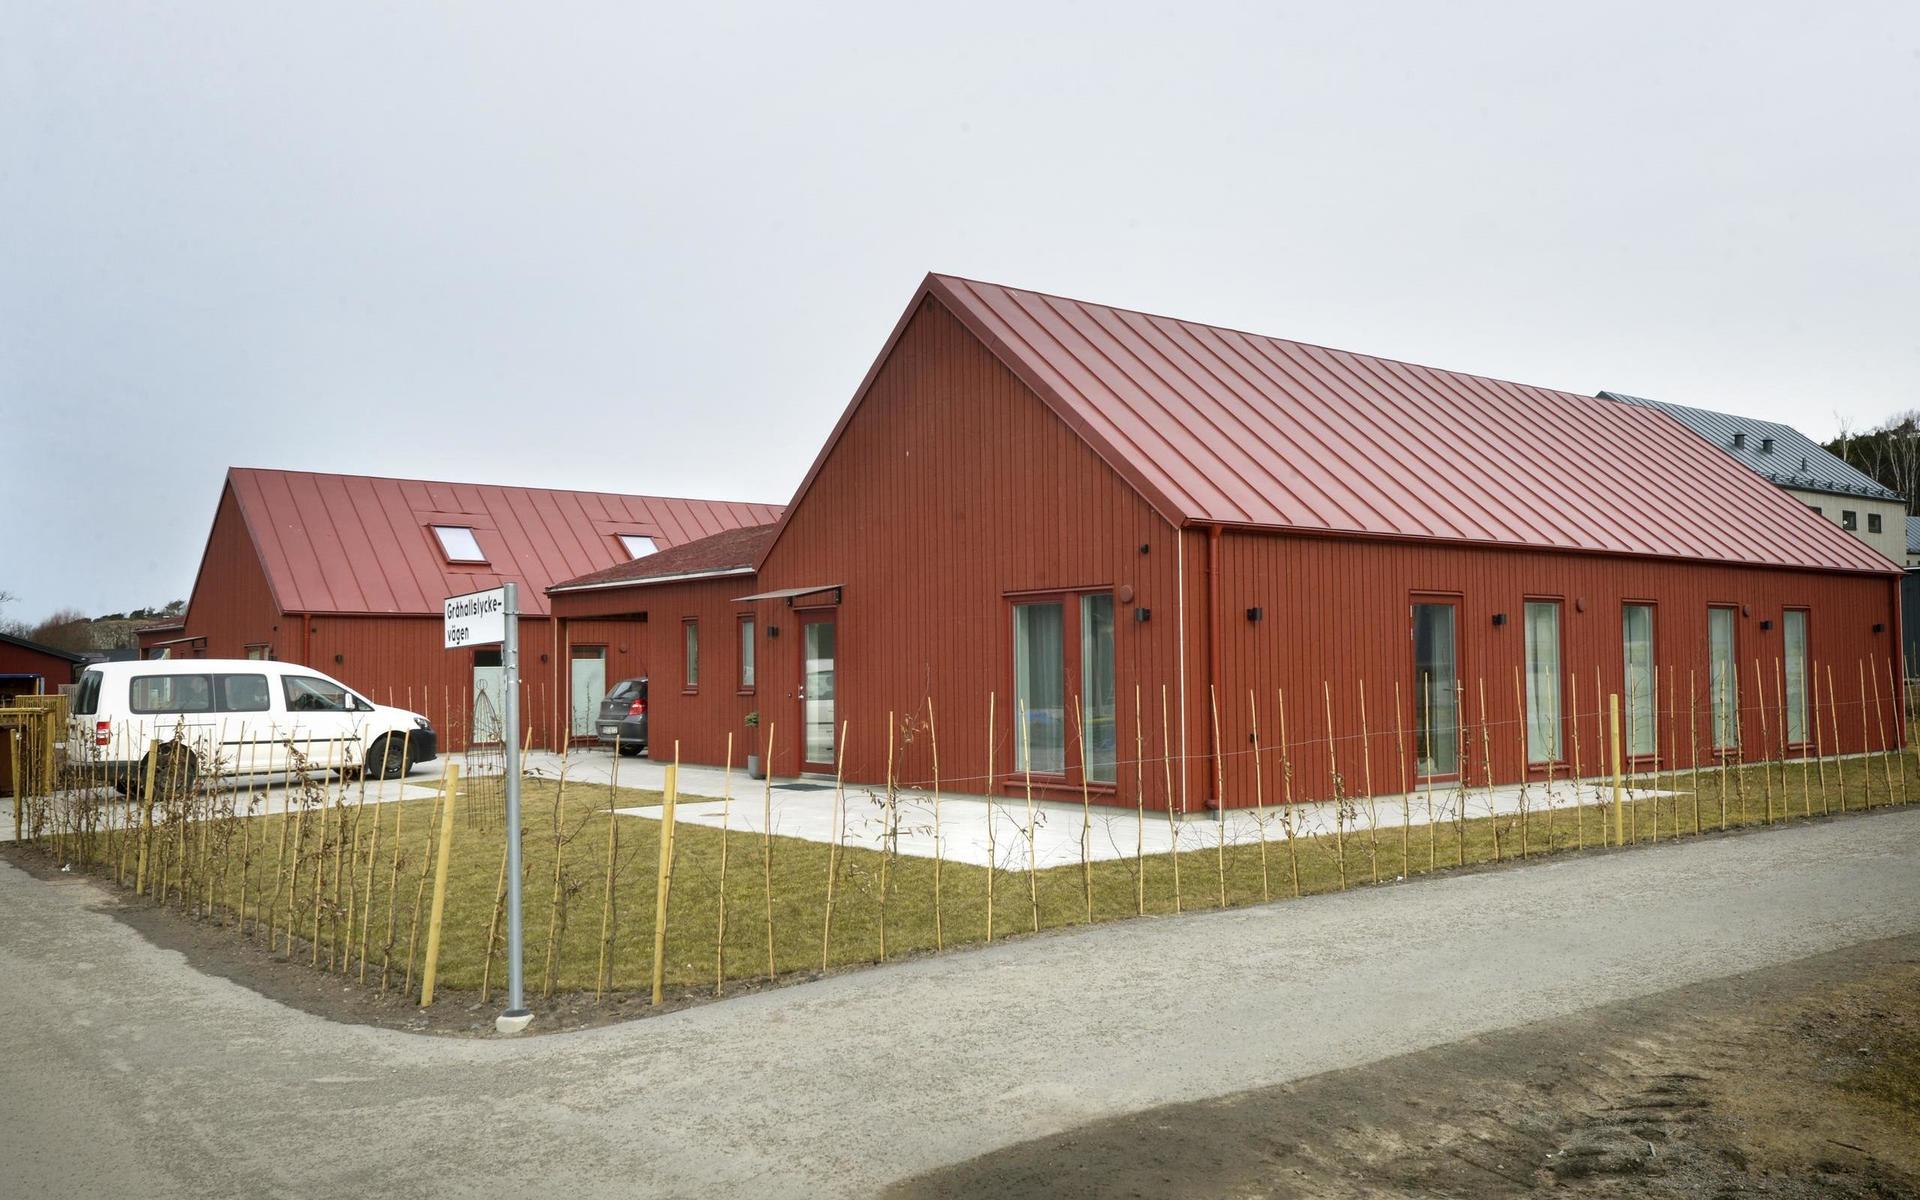 Ängalyckan bebyggs med villor och kedjehus. Just de här röda husen var nominerade till Gar-Bo Försäkring AB:s pris Årets småhus men priset gick till Villa Schelin från Willa Nordic.